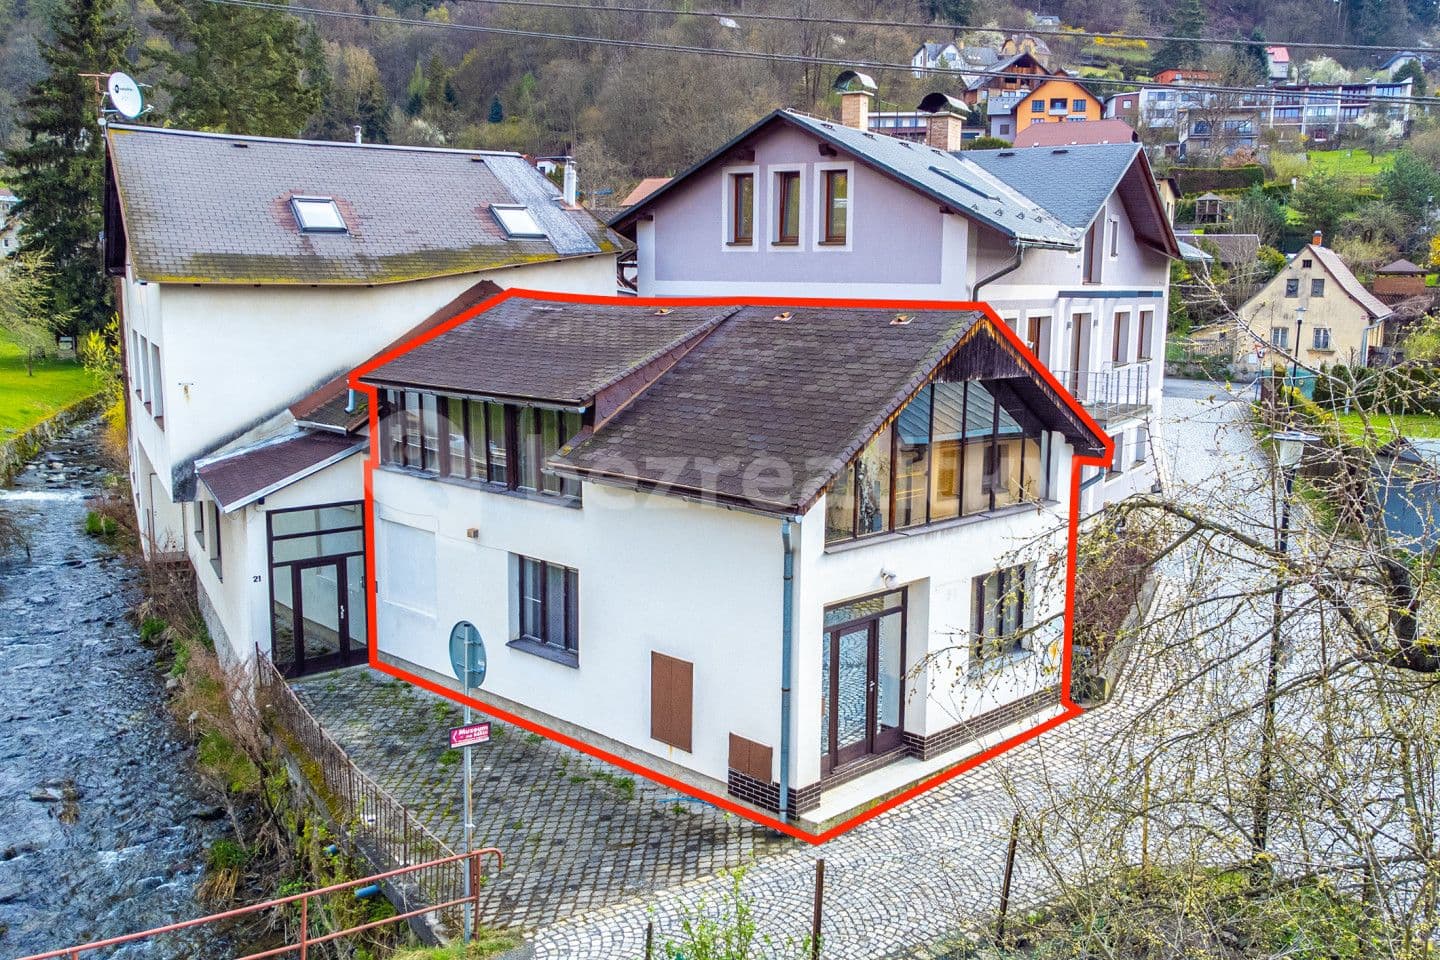 Predaj domu 119 m², pozemek 106 m², Jirchářská, Železný Brod, Liberecký kraj